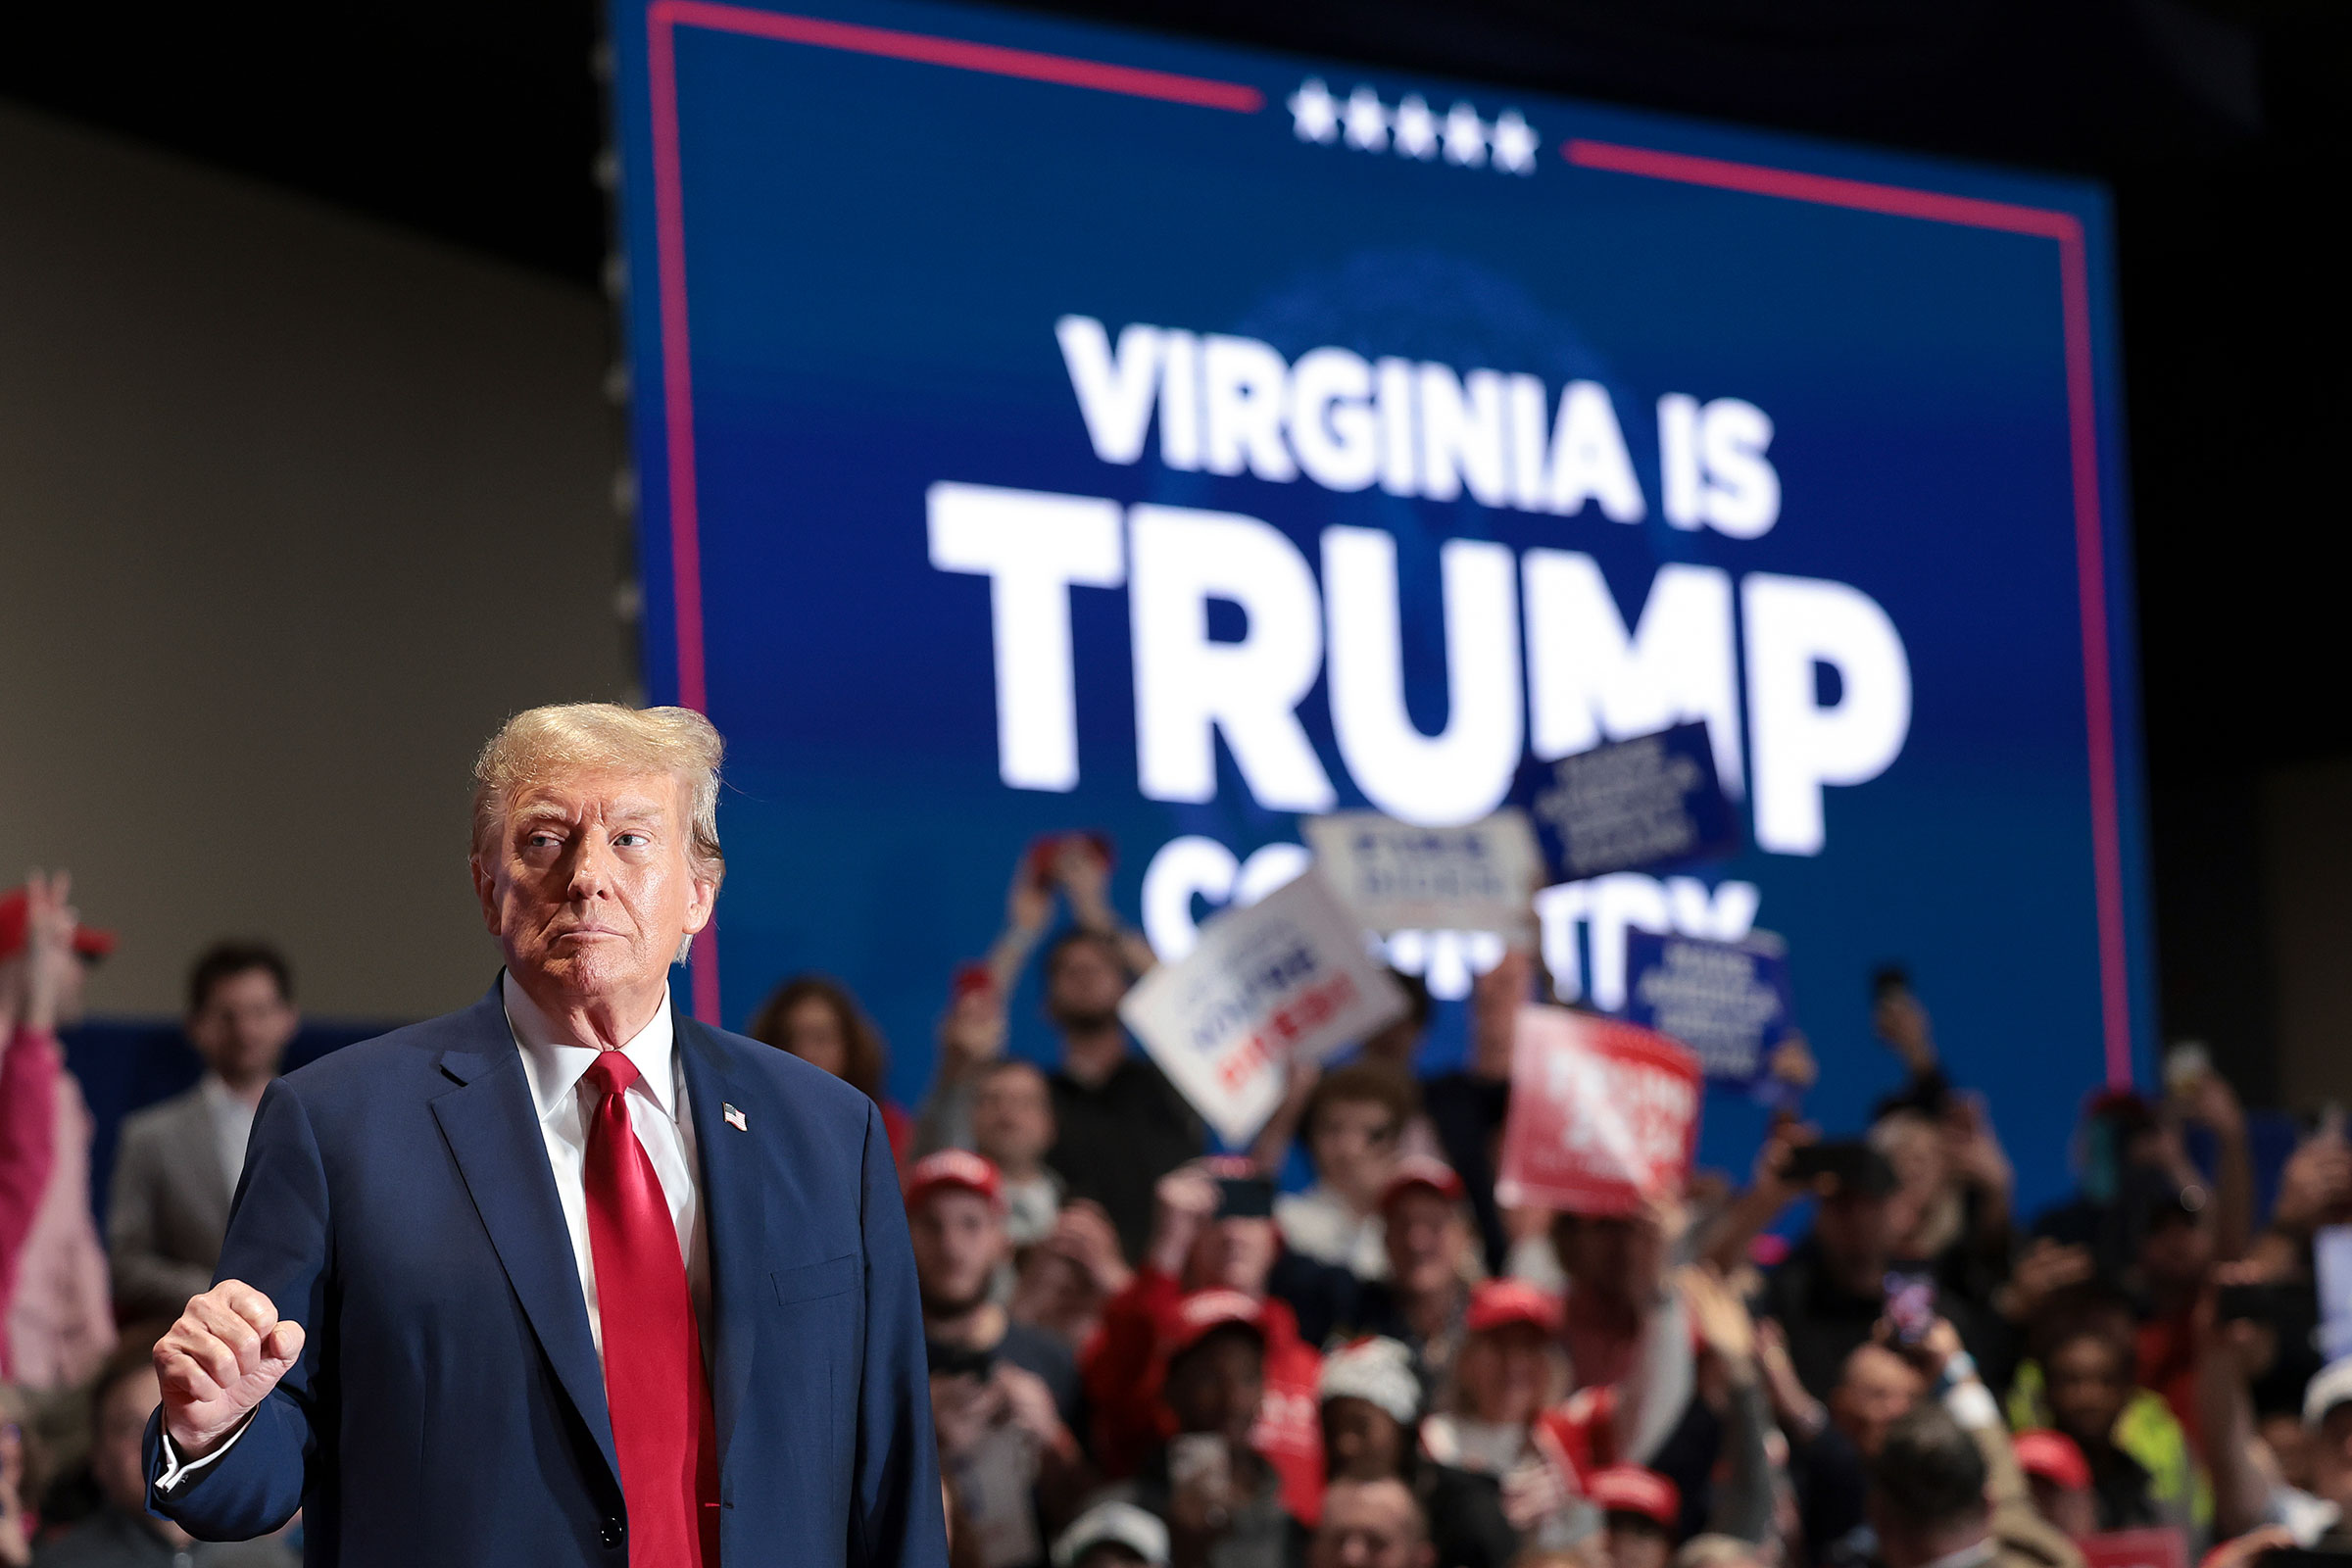 Virginia GOP-i esmane koosolek otsustati Trumpi võiduna